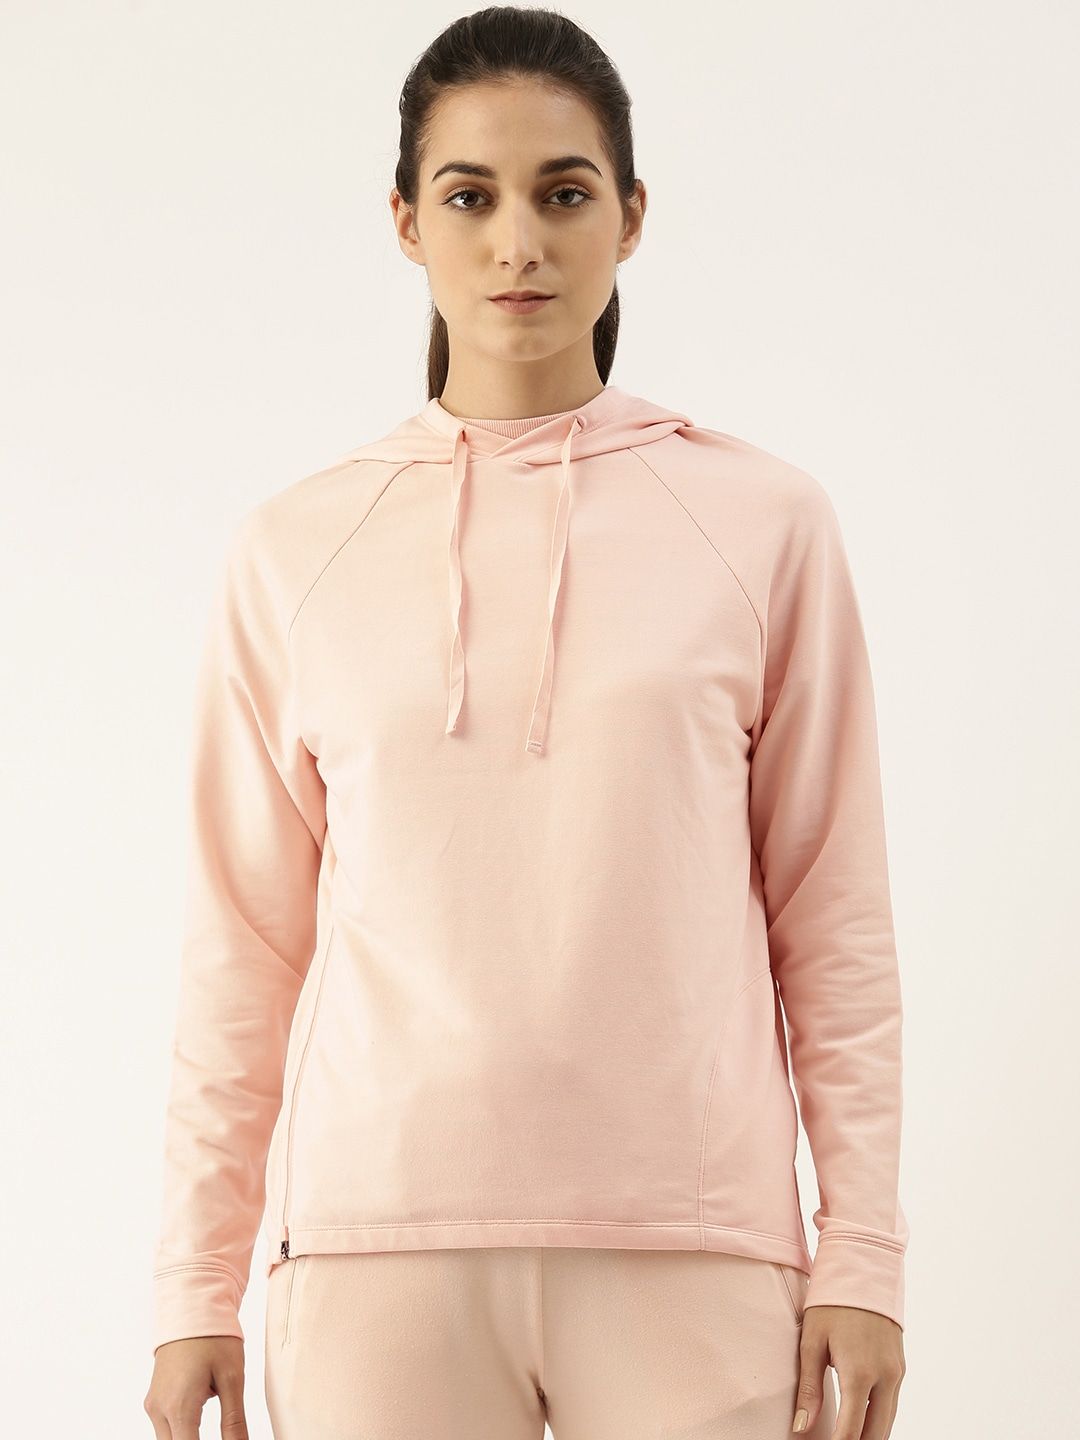 Enamor Women Pink Hooded Sweatshirt Price in India